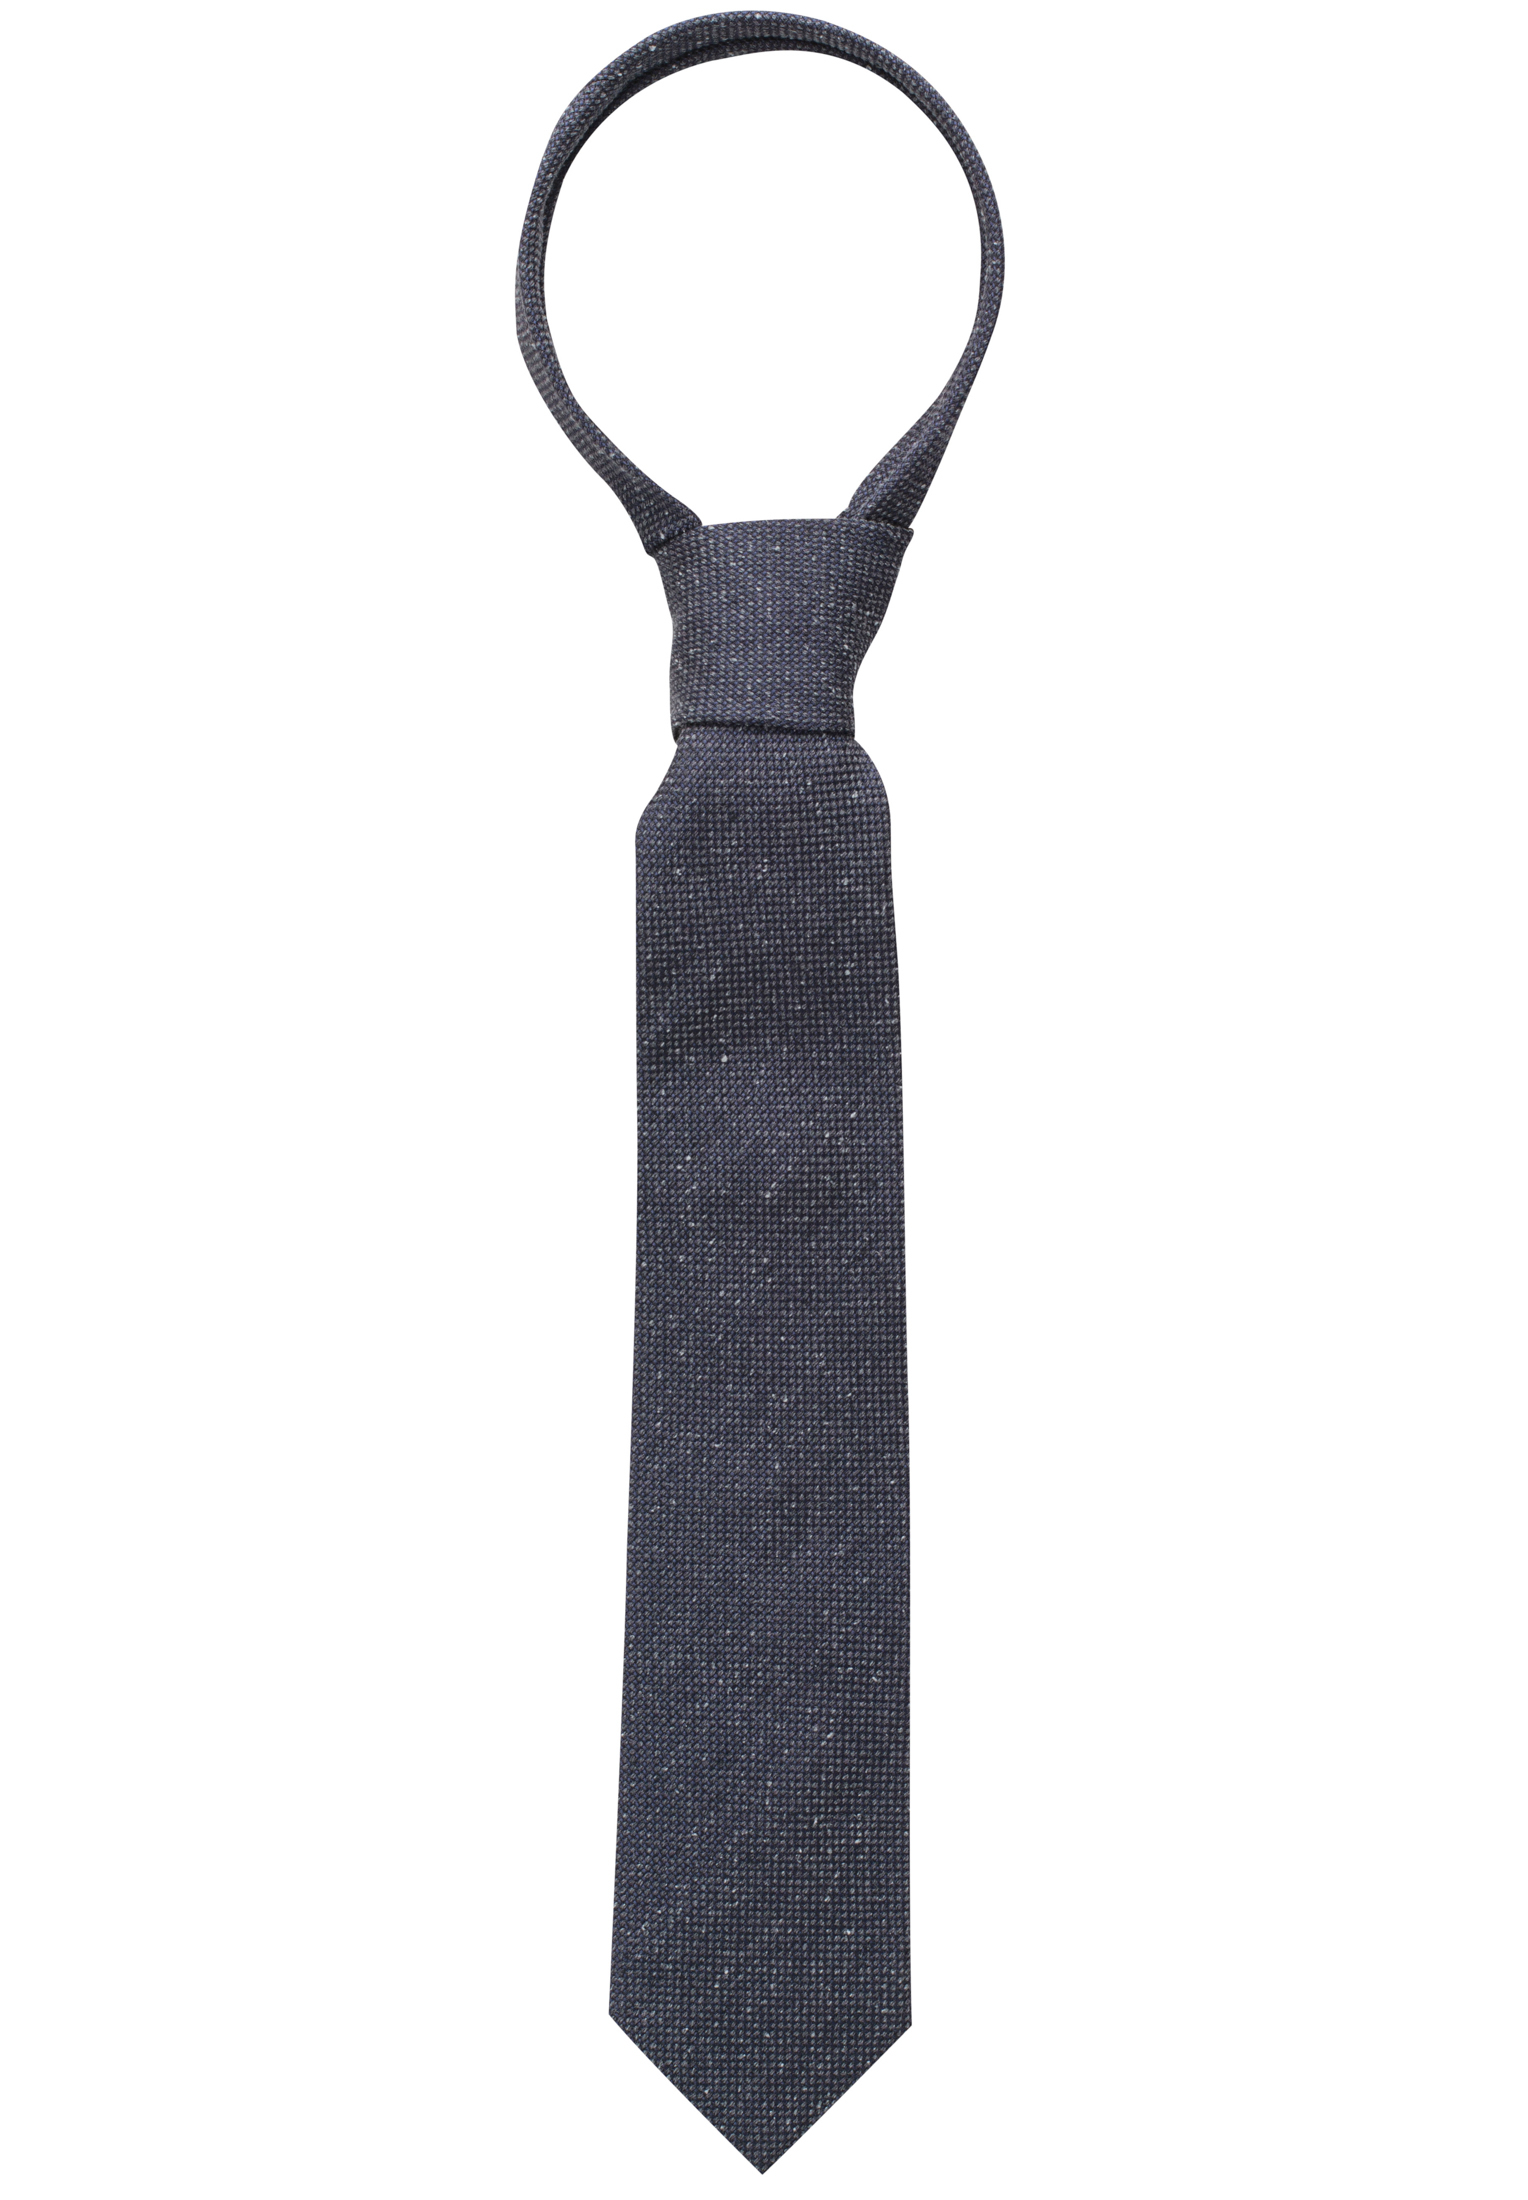 Krawatte in grau unifarben | grau | 142 | 1AC00468-03-01-142